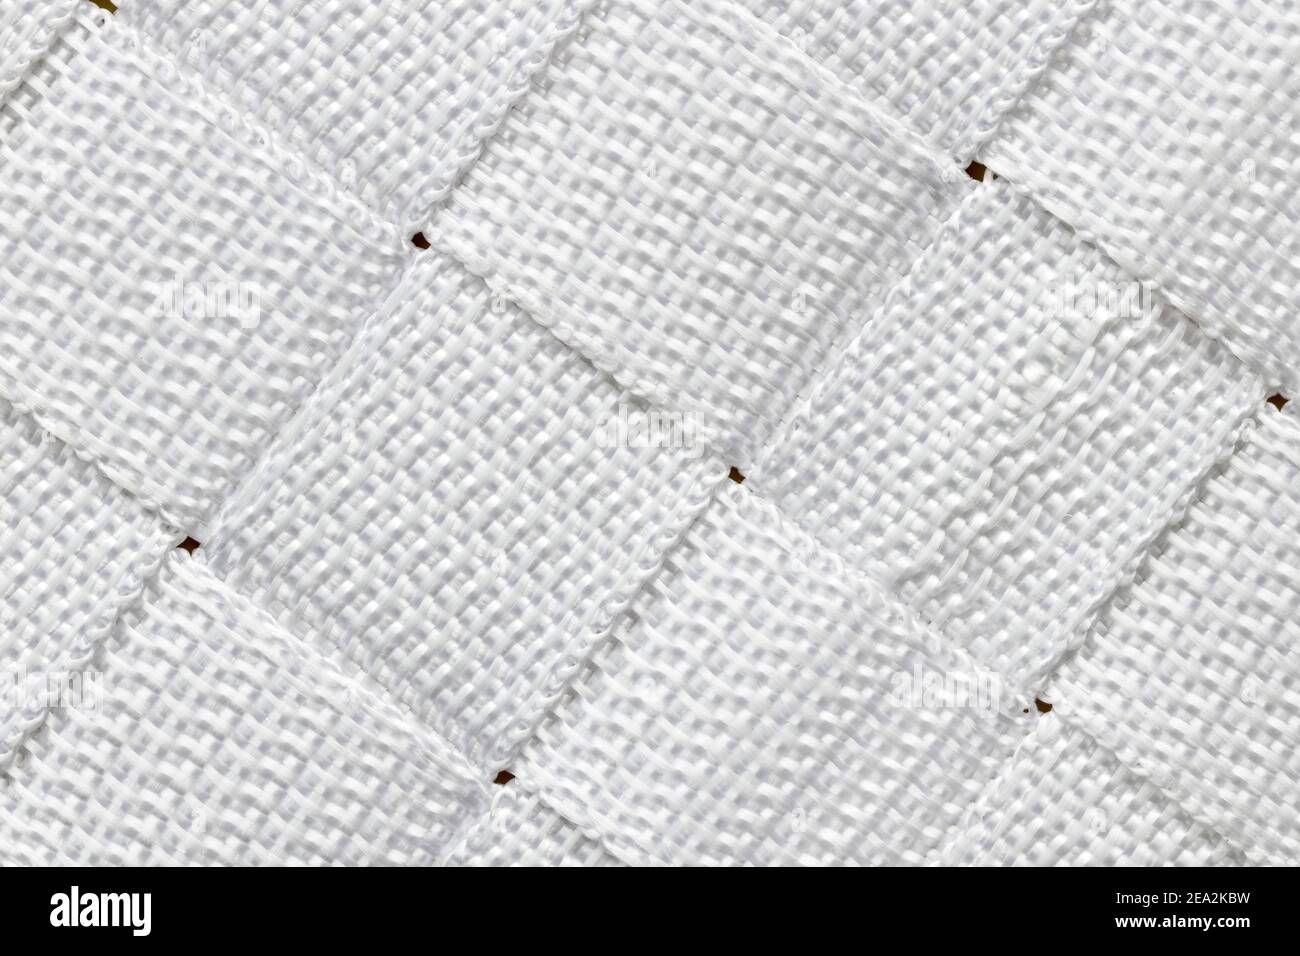 Motif diagonal abstrait alterné composé de carrés de nylon blanc tissé. Banque D'Images